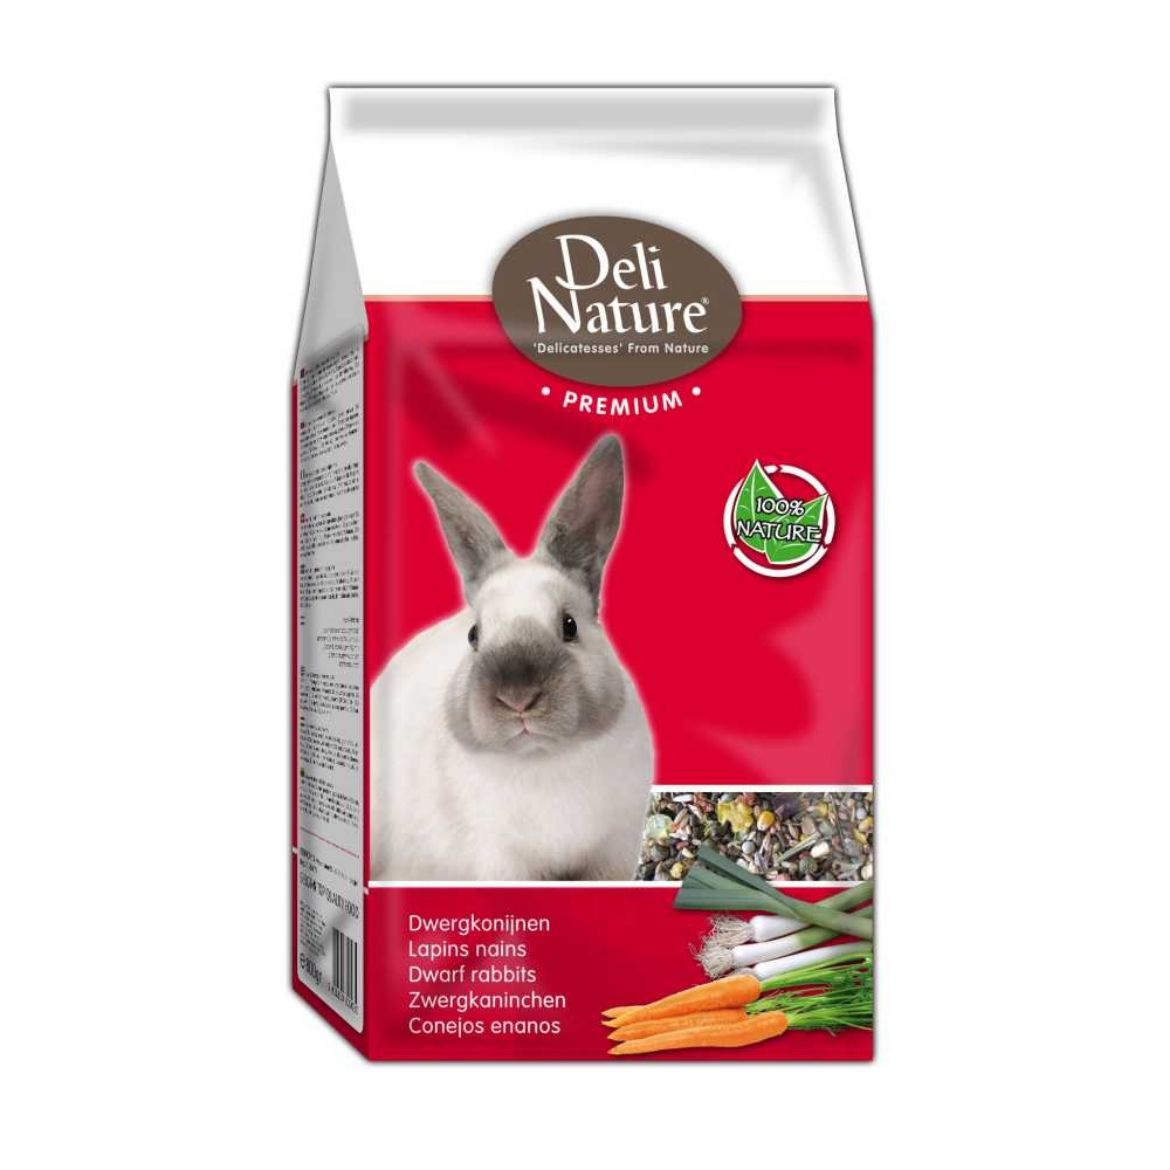 Obrázek z Deli Nature Premium zakrslý králík 800 g 